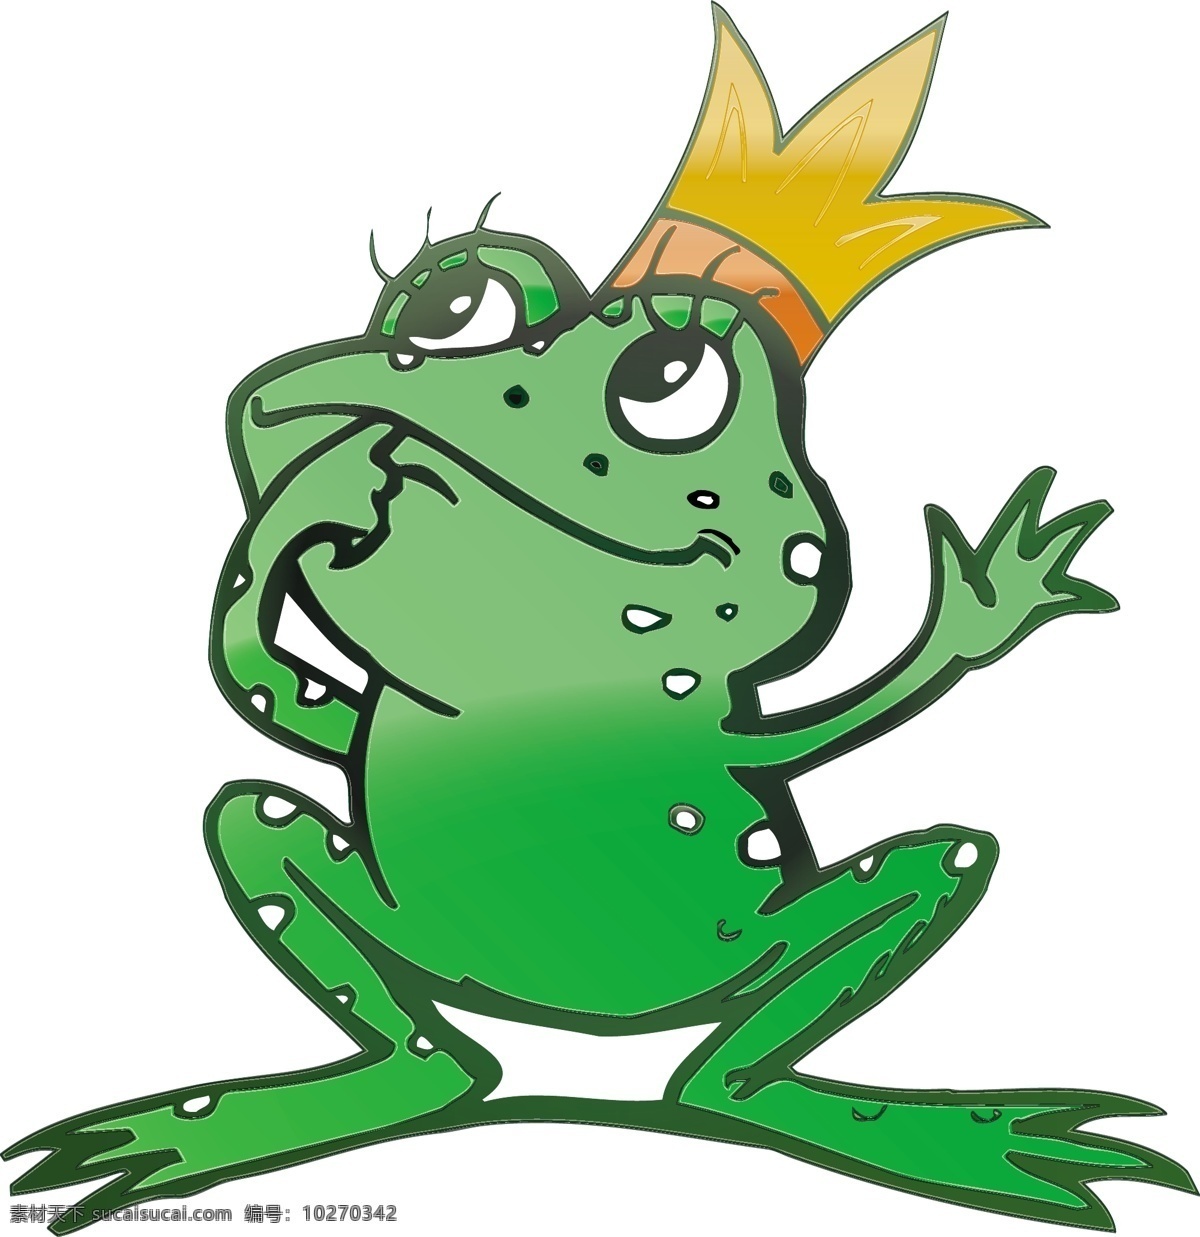 卡通 青蛙王子 向量 皇冠 可爱 矢量图 矢量人物